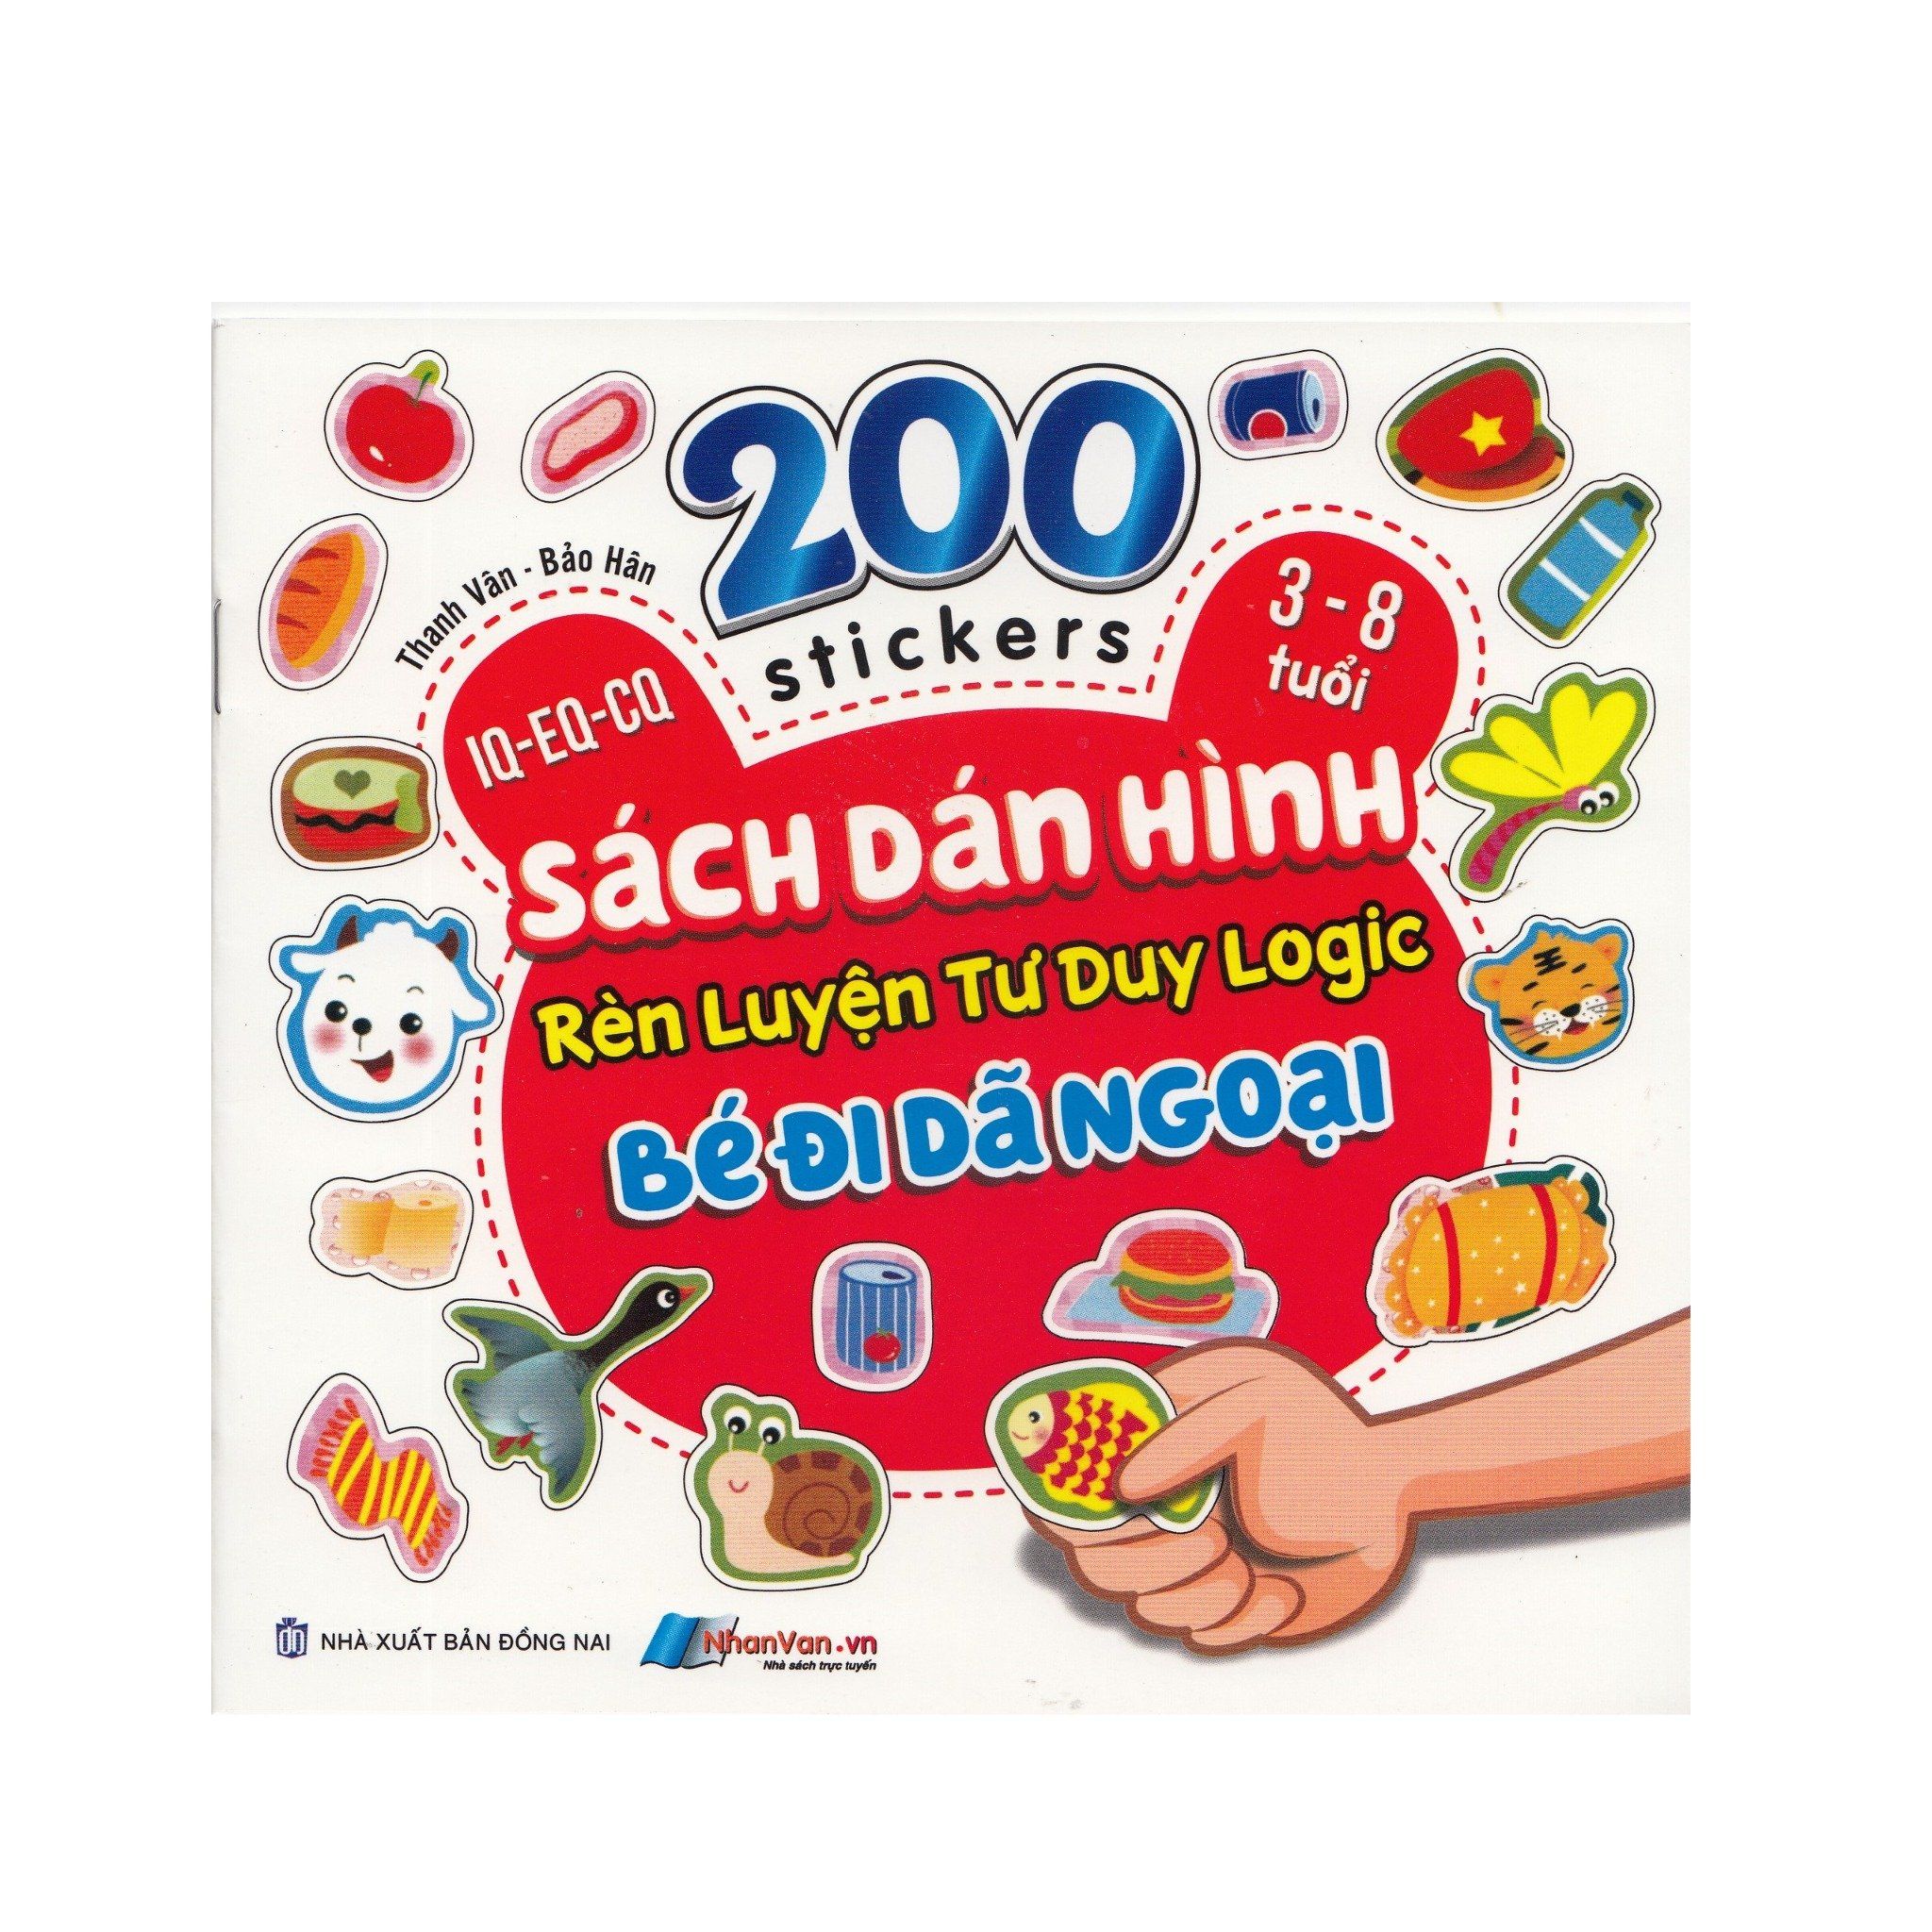  200 Stickers - 3-8 Tuổi - Sách Dán Hình Rèn Luyện Tư Duy Logic - Bé Đi Dã Ngoại 